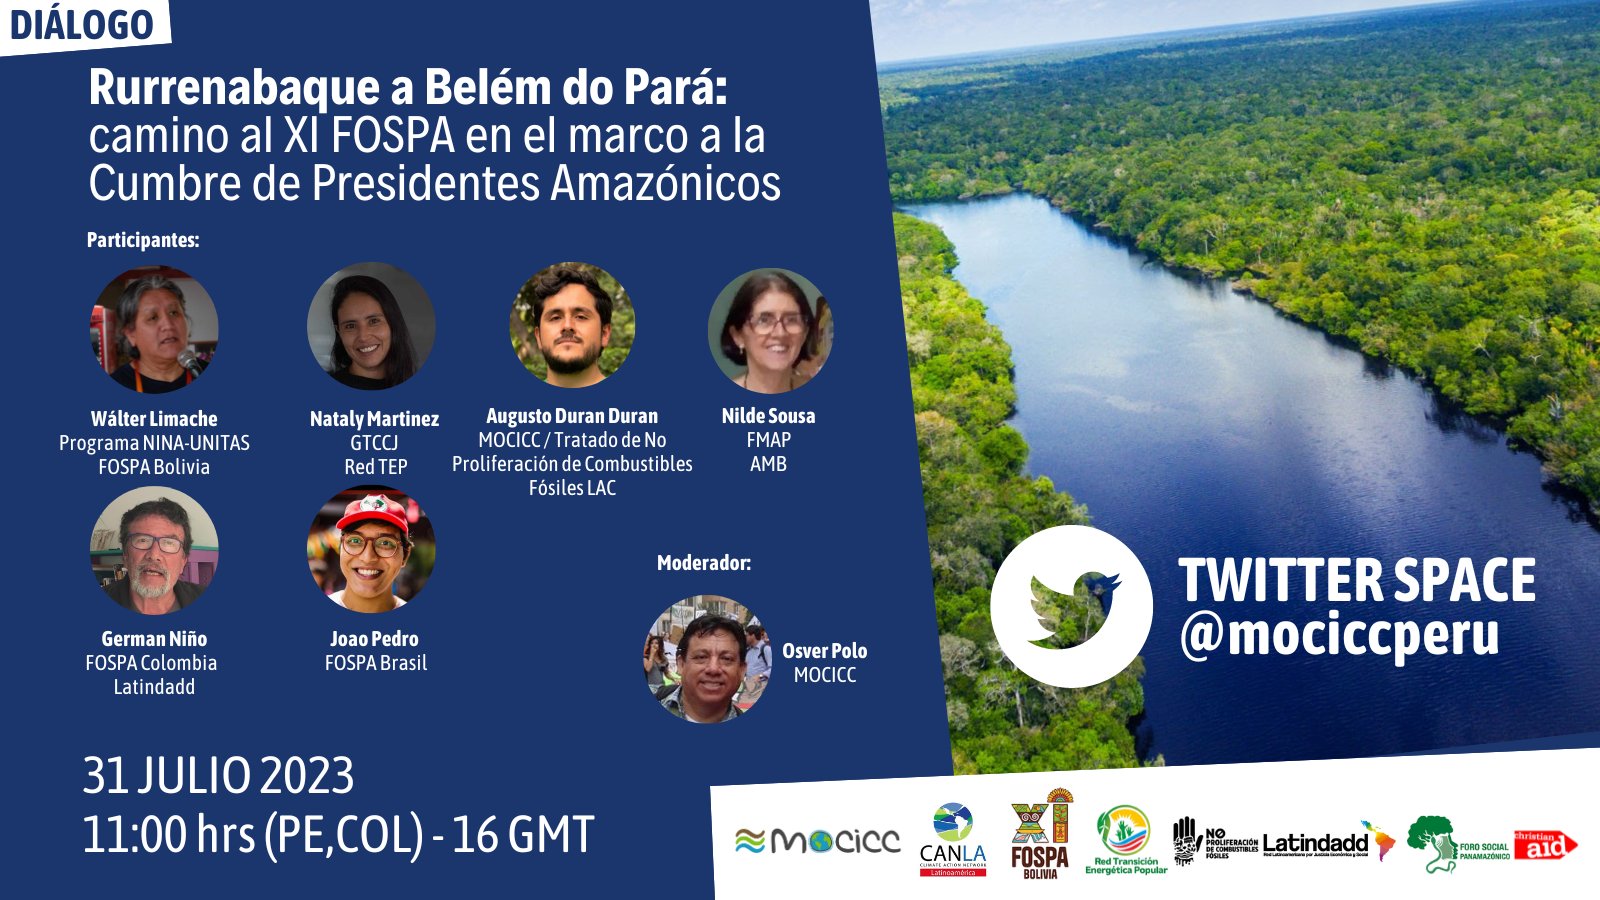 Diálogo Rurrenabaque a Belém do Pará: camino al XI FOSPA en el marco a la Cumbre de Presidentes Amazónicos